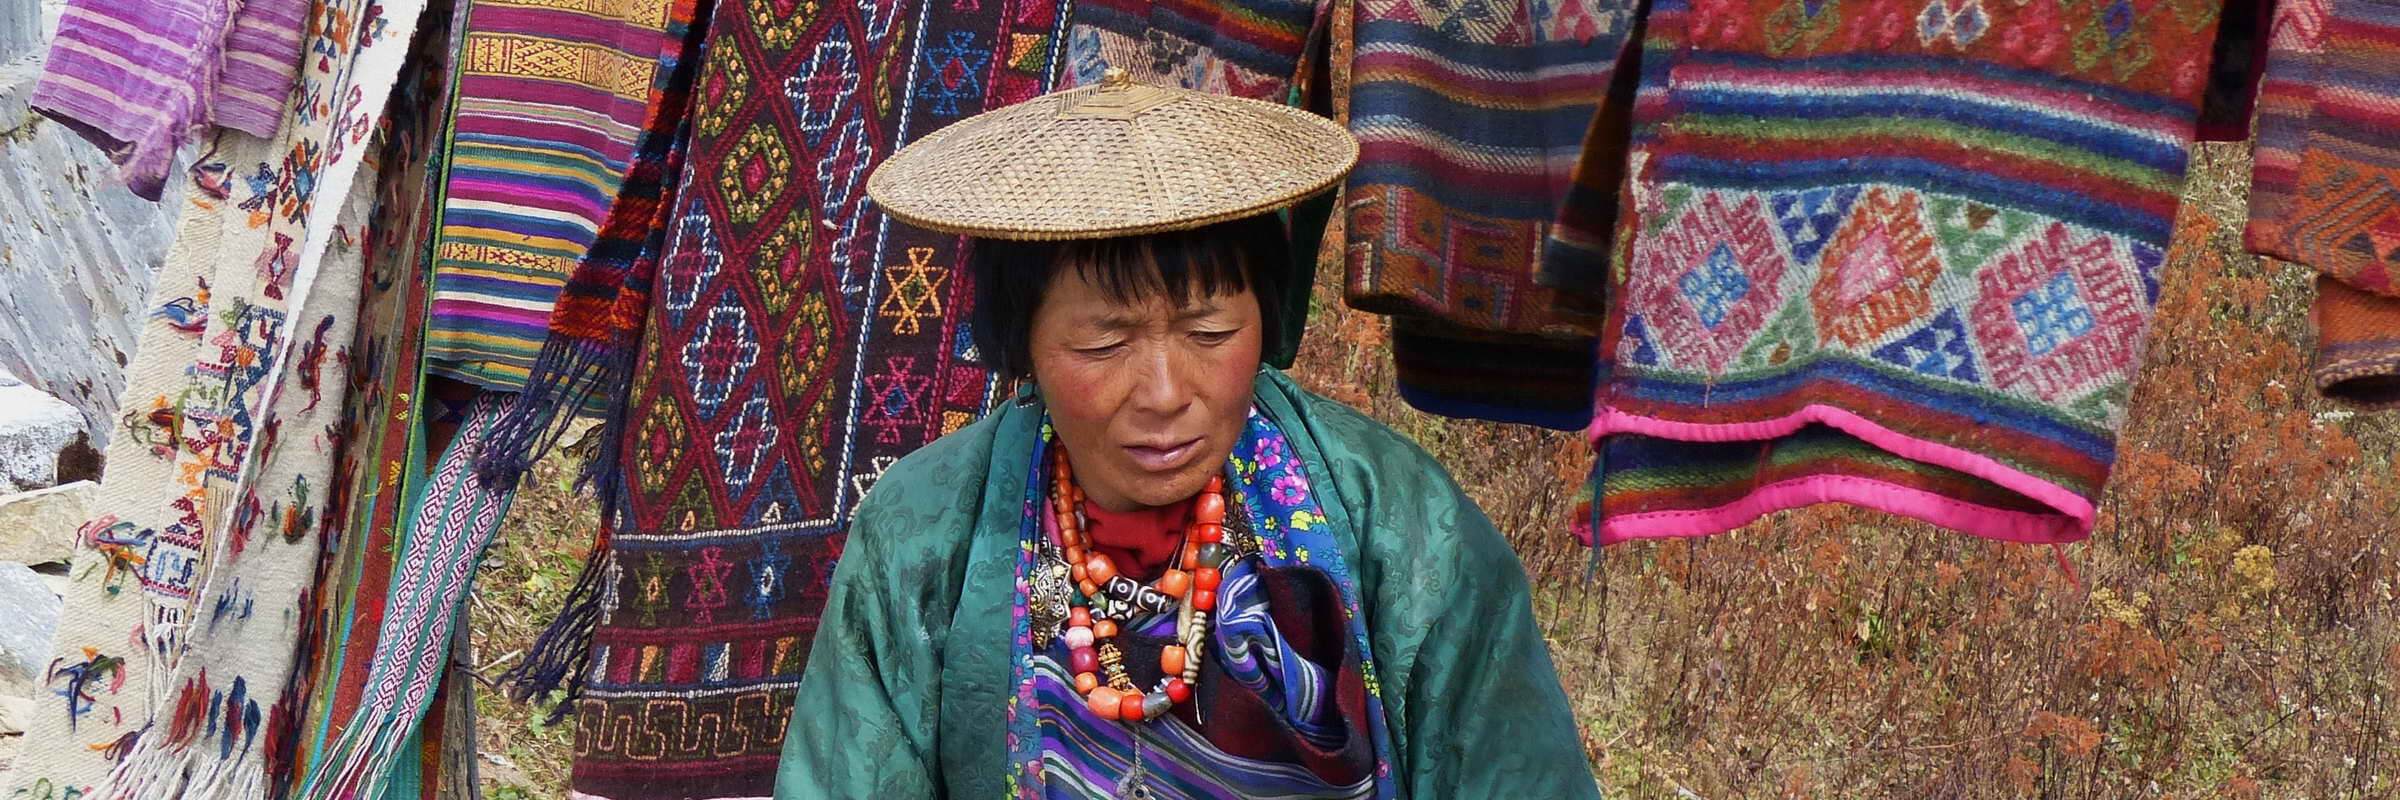 Bhutan ein ursprüngliches Reiseziel